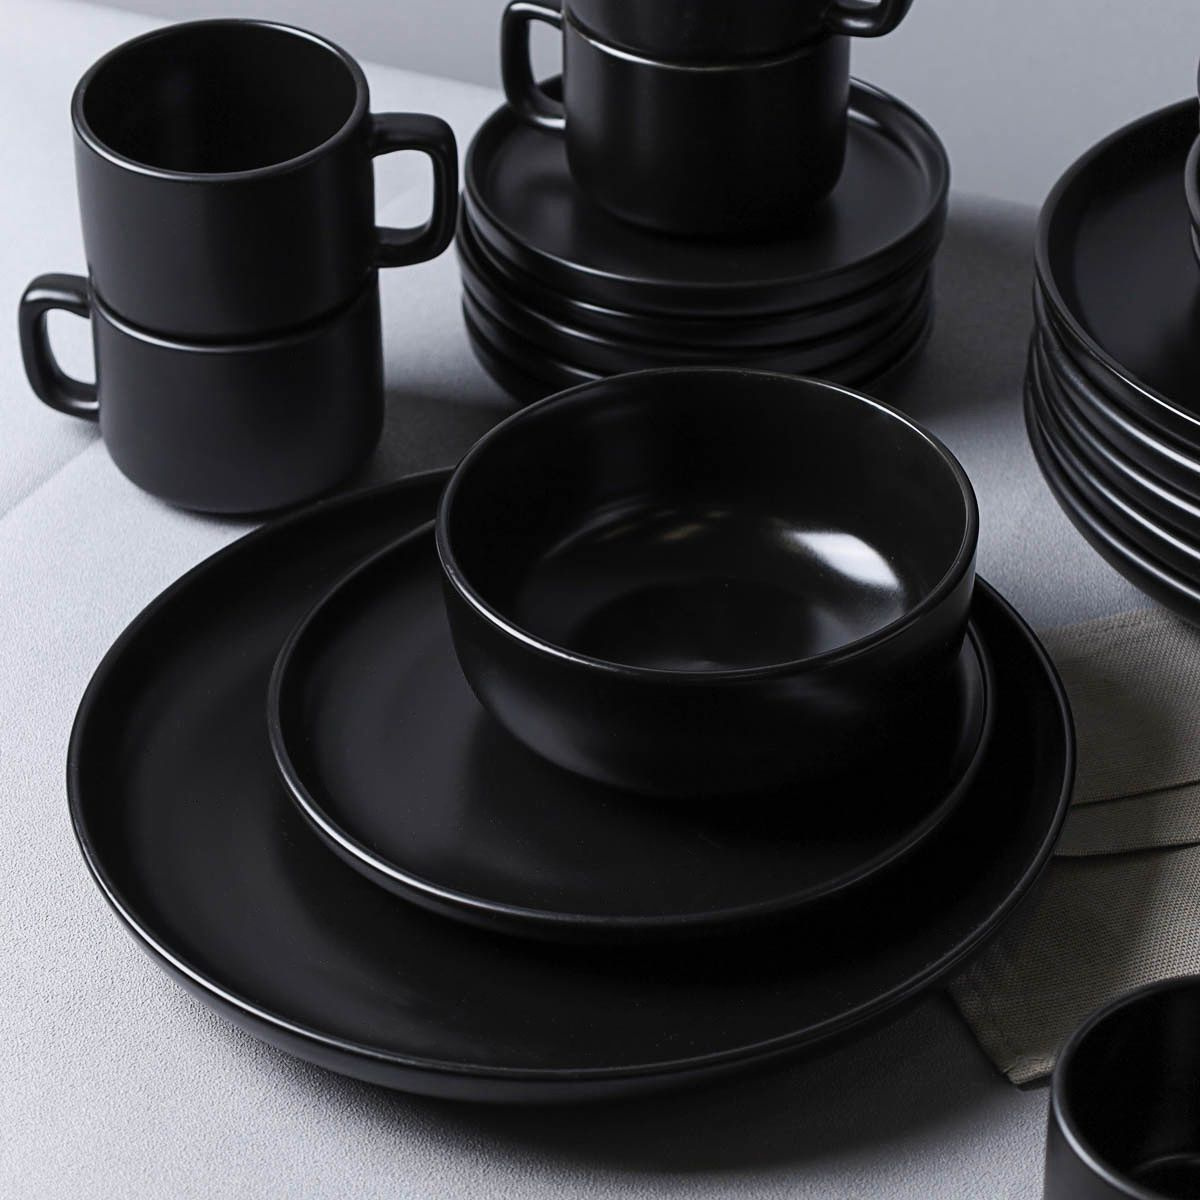 Набор посуды; столовый набор; набор посуды керамика; набор керамической посуды; посуда стильная; посуда современная; набор посуды 20 предметов; набор посуды на 4 персоны;  набор посуды черный; тарелки черные;